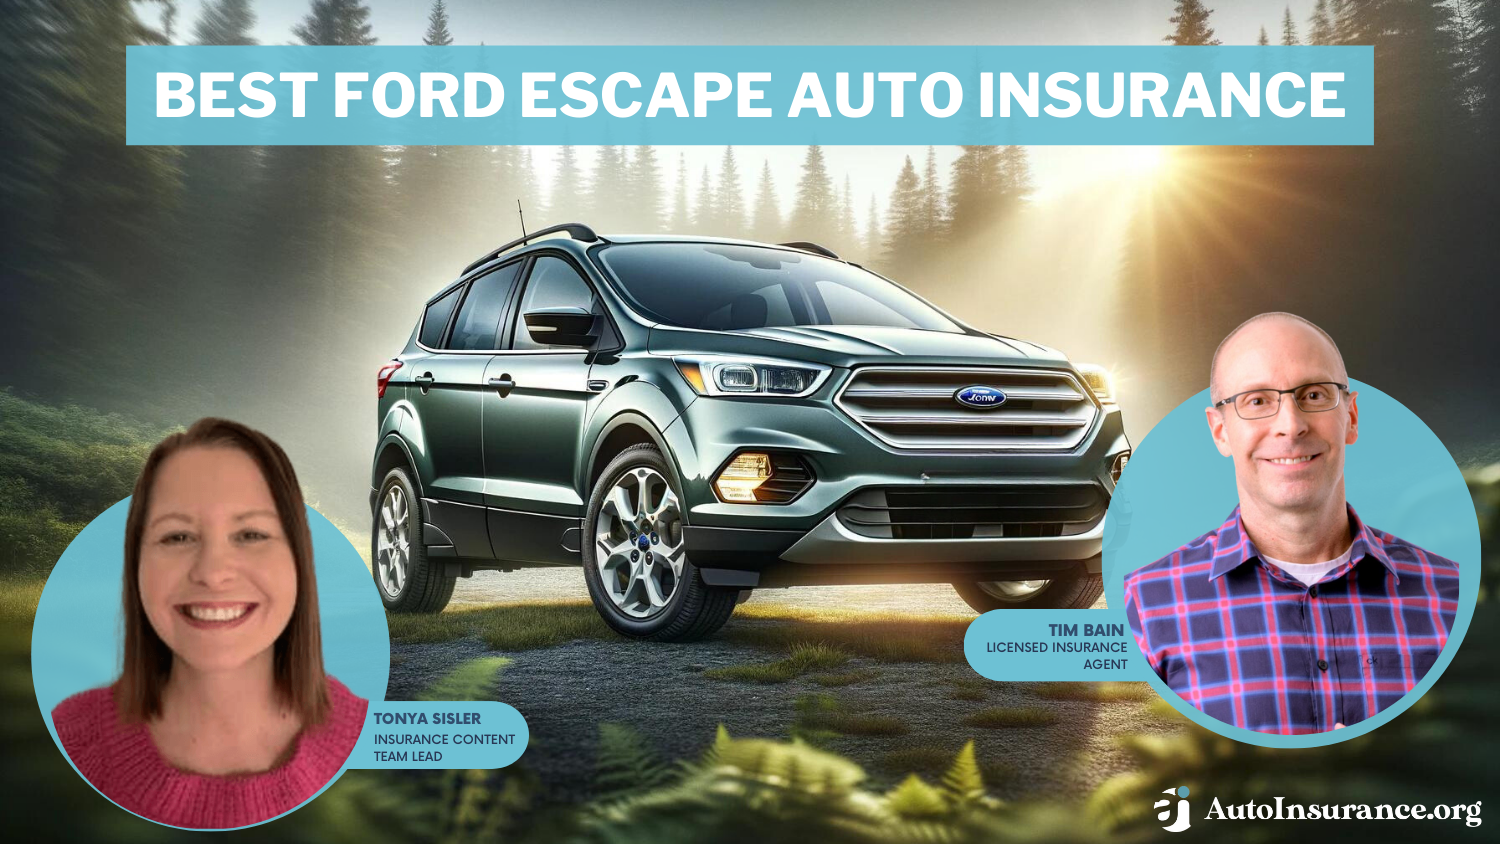 Best Ford Escape Auto Insurance: Progressive, State Farm, Allstate